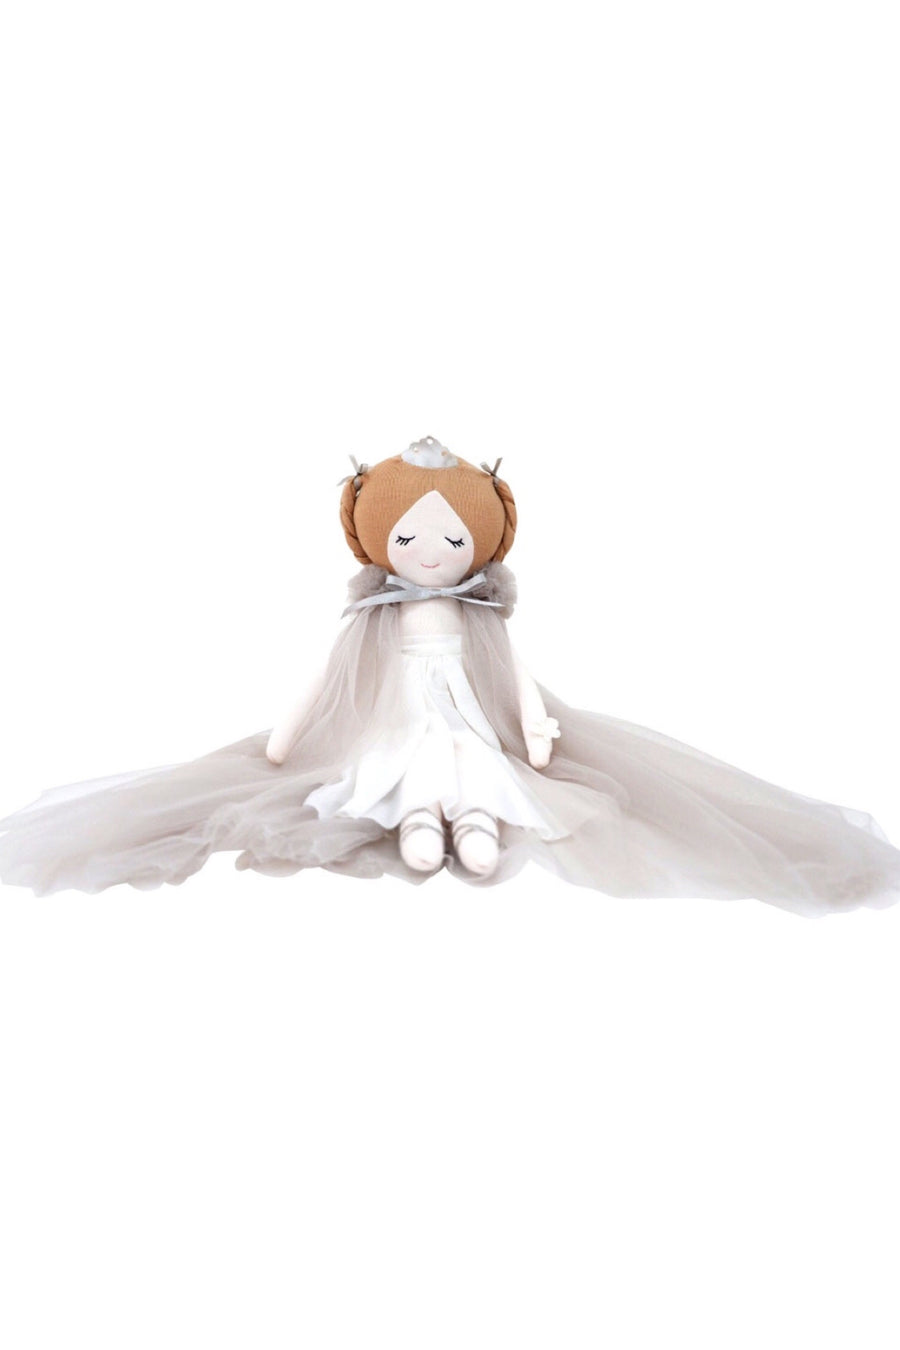 Dreamy Princess Olivia, Toy, Spinkie - 3LittlePicks